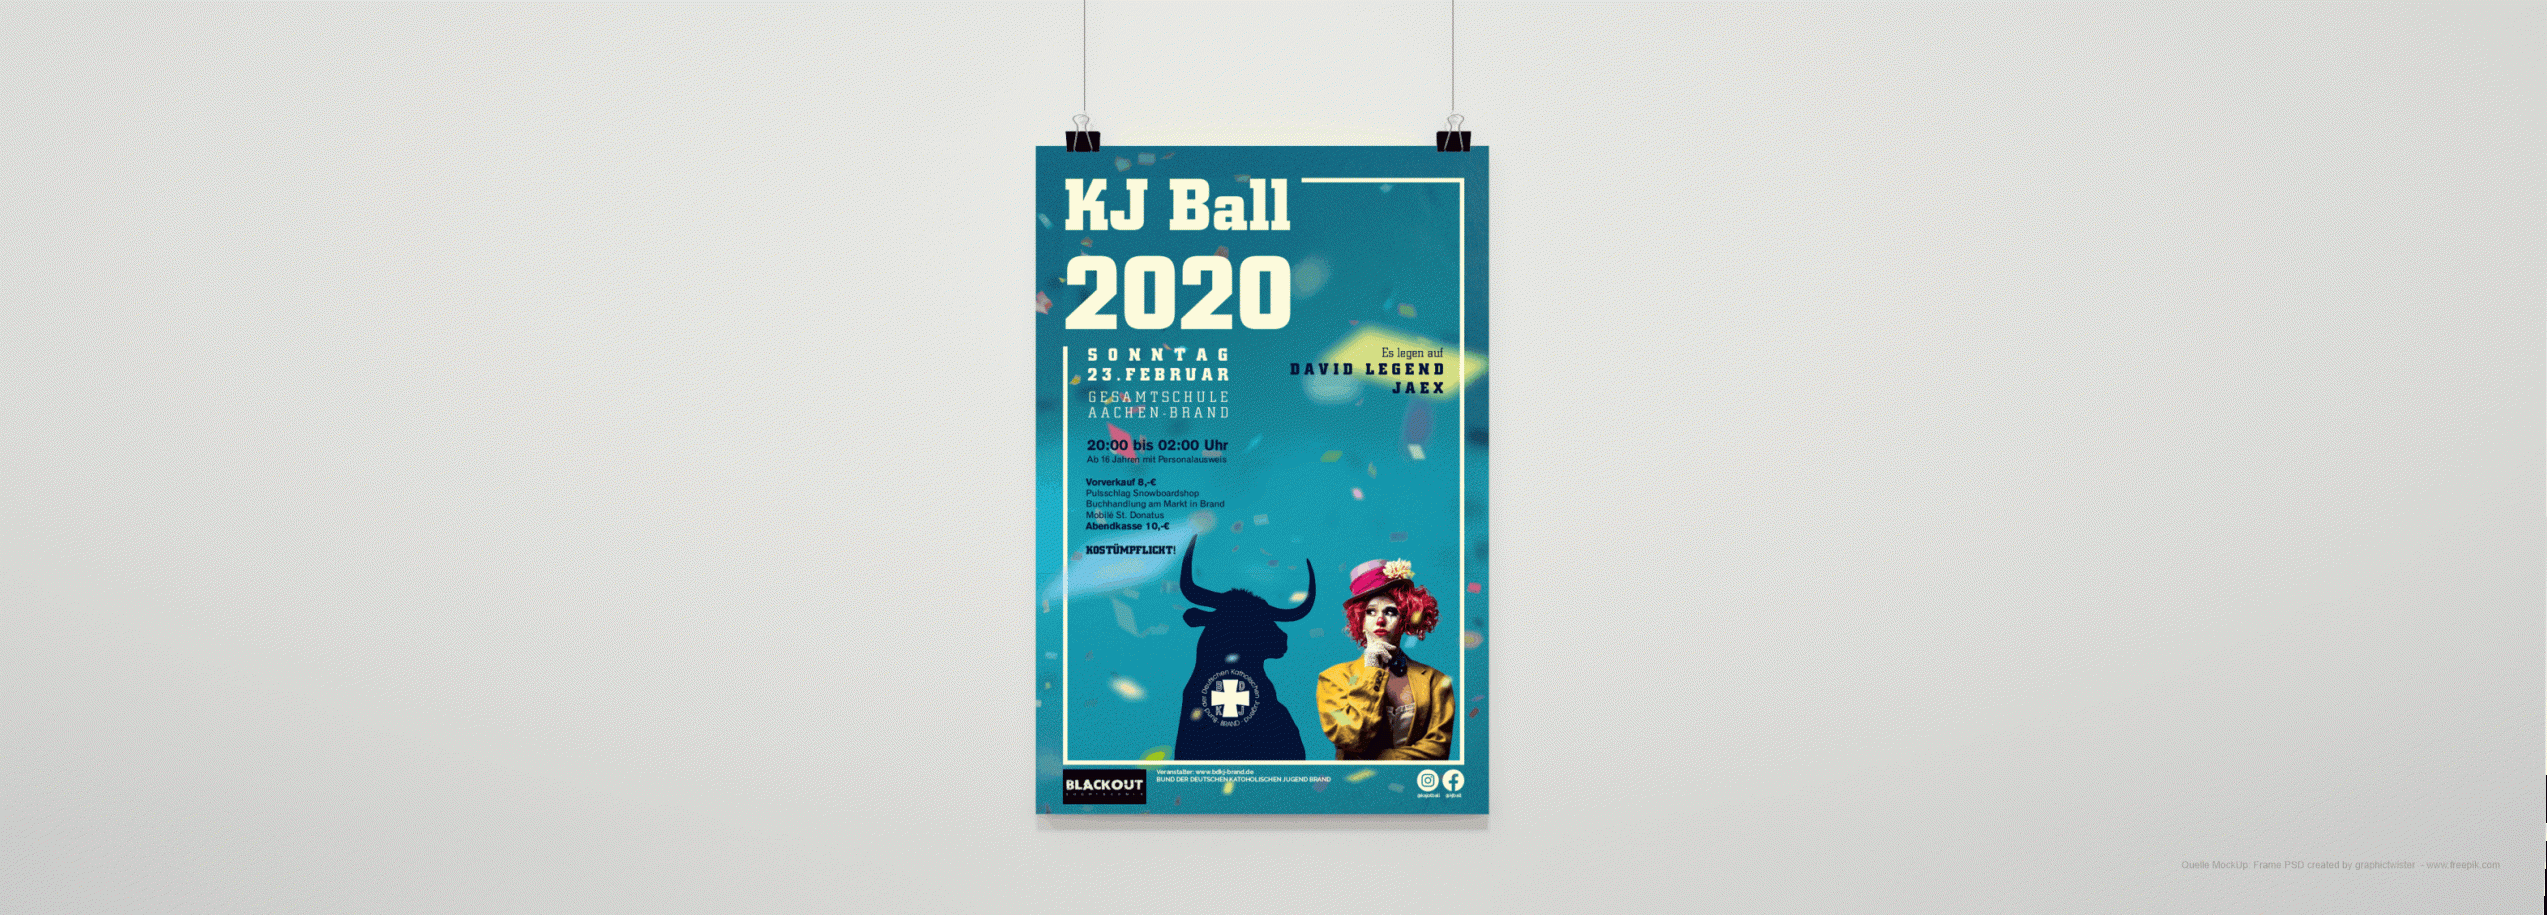 Plakat_KJ-Ball 20_Design_Schauwerbung Mennicken